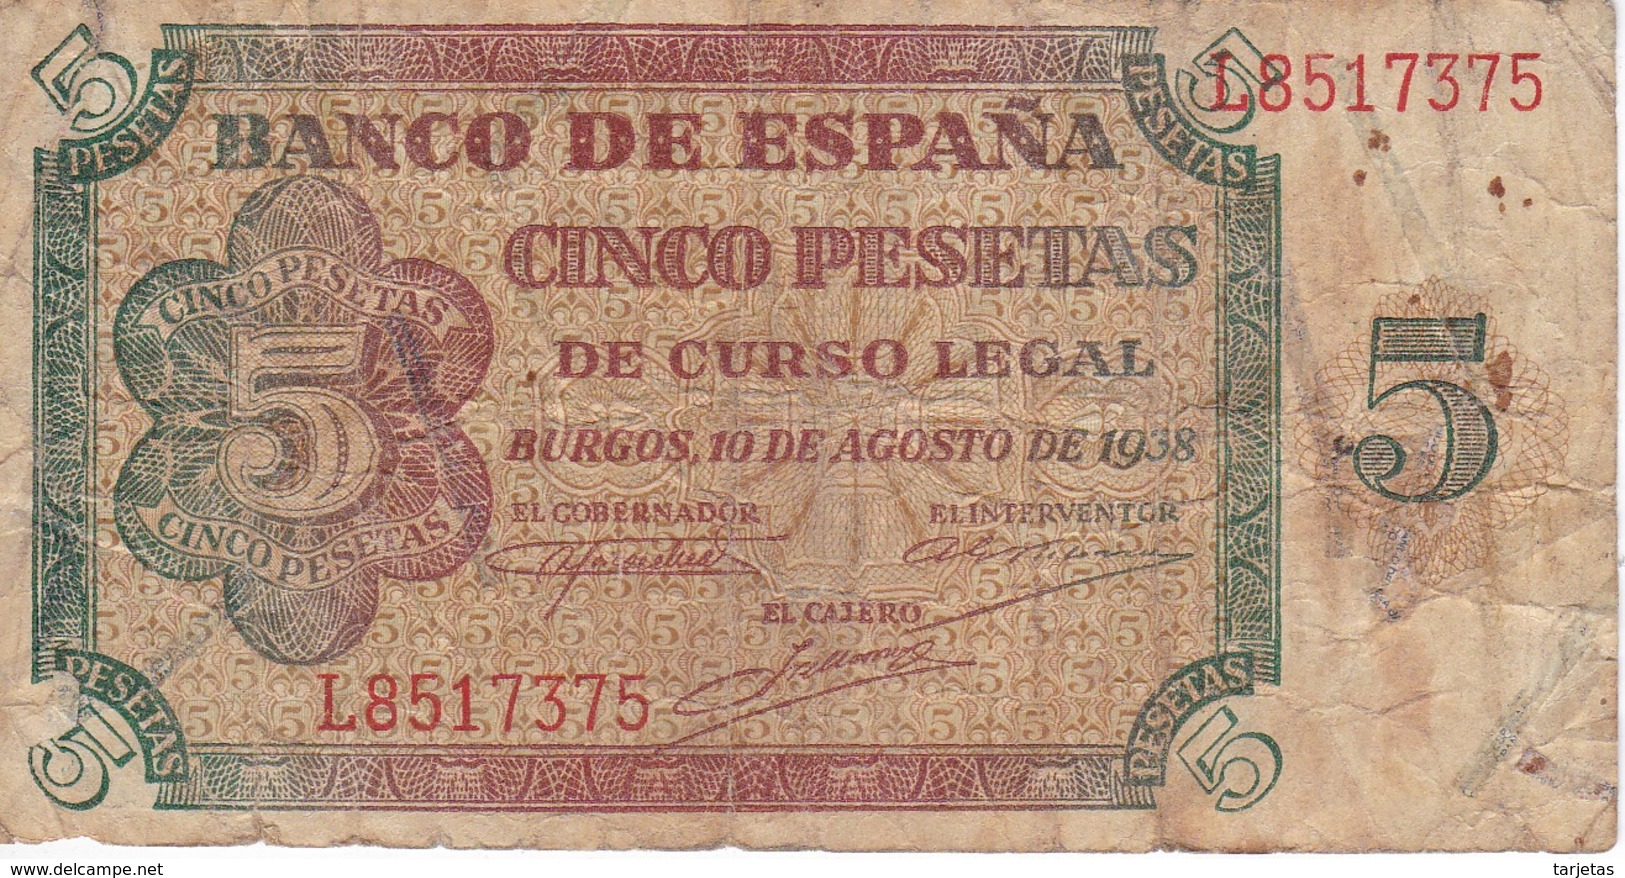 BILLETE DE ESPAÑA DE 5 PTAS DE BURGOS DEL AÑO 1938 SERIE L  (BANKNOTE) - 5 Pesetas